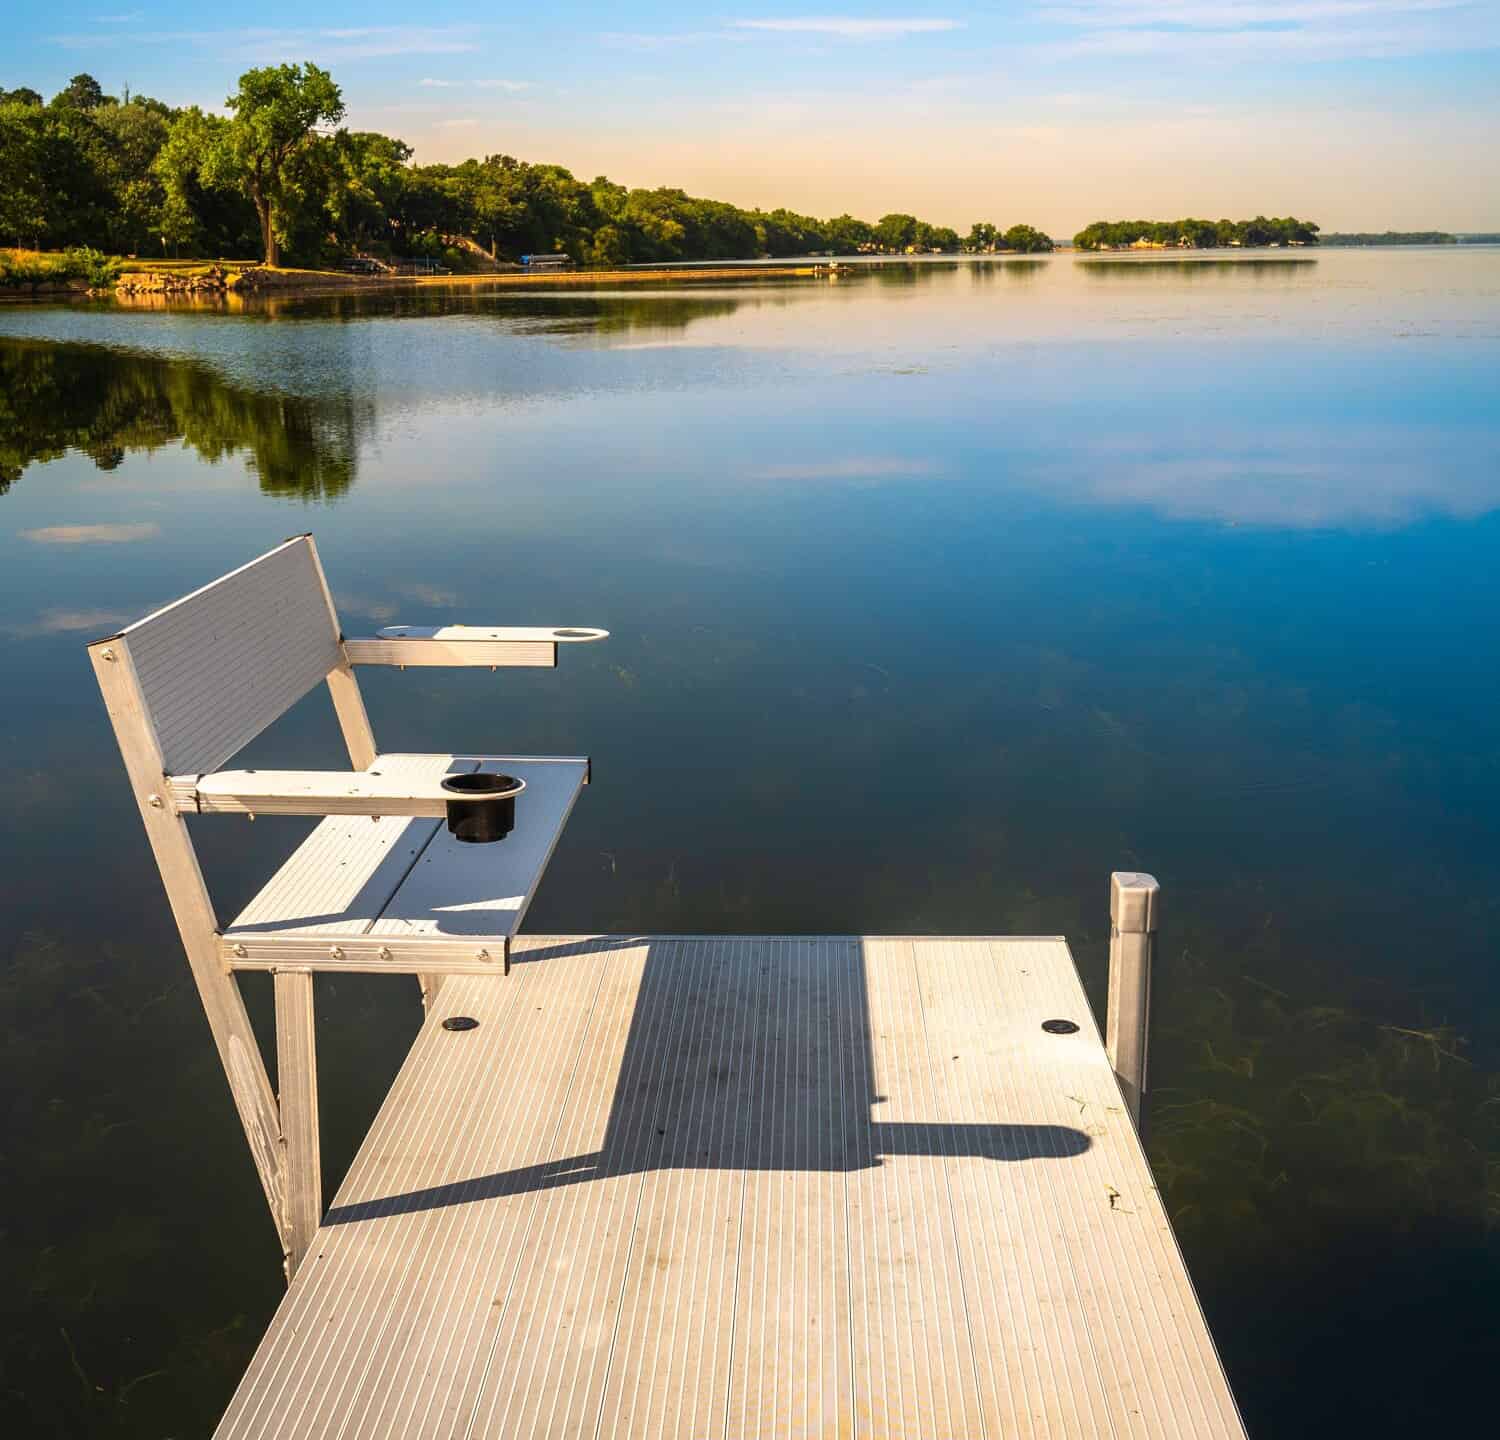 Passerella in metallo con panchine in acqua.  Ambienti naturali rilassanti e tranquilli e paesaggio del Big Stone Lake a Ortonville, Minnesota, USA.